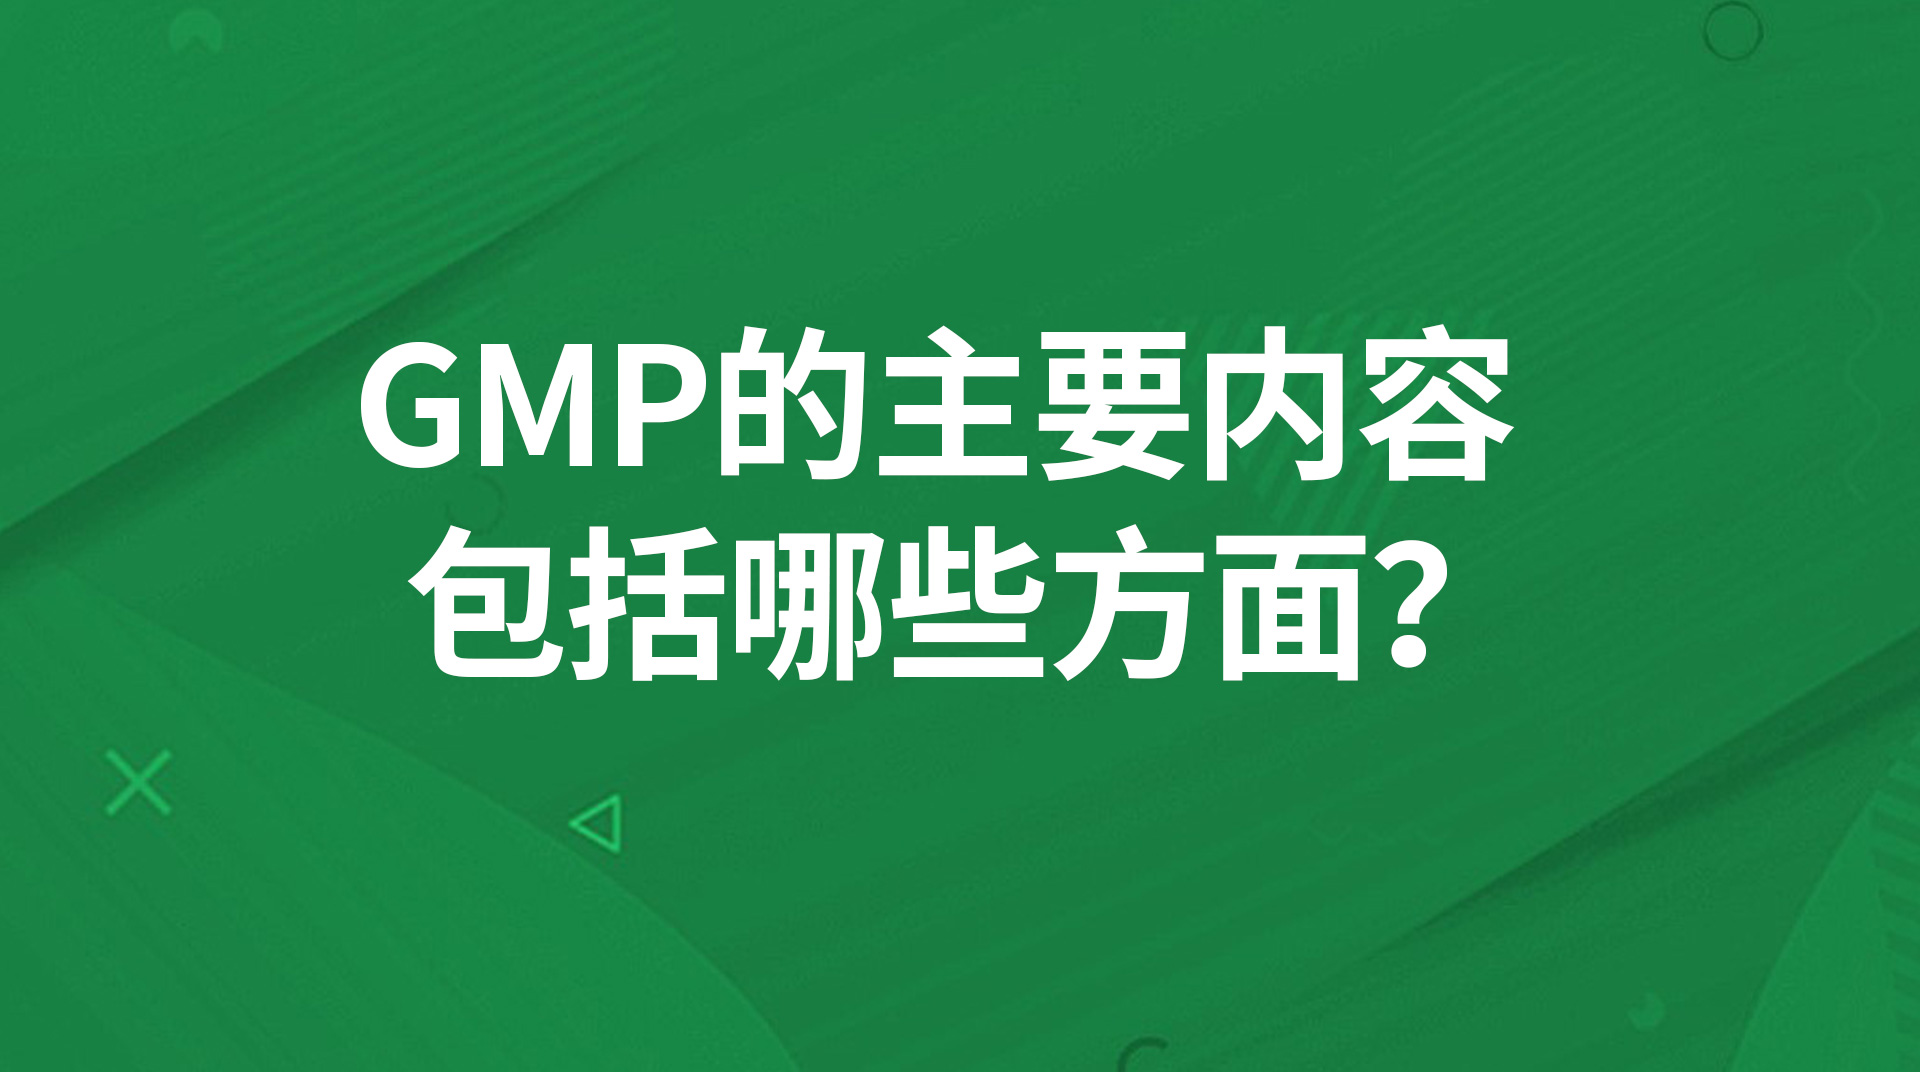 GMP的主要内容包括哪些方面？